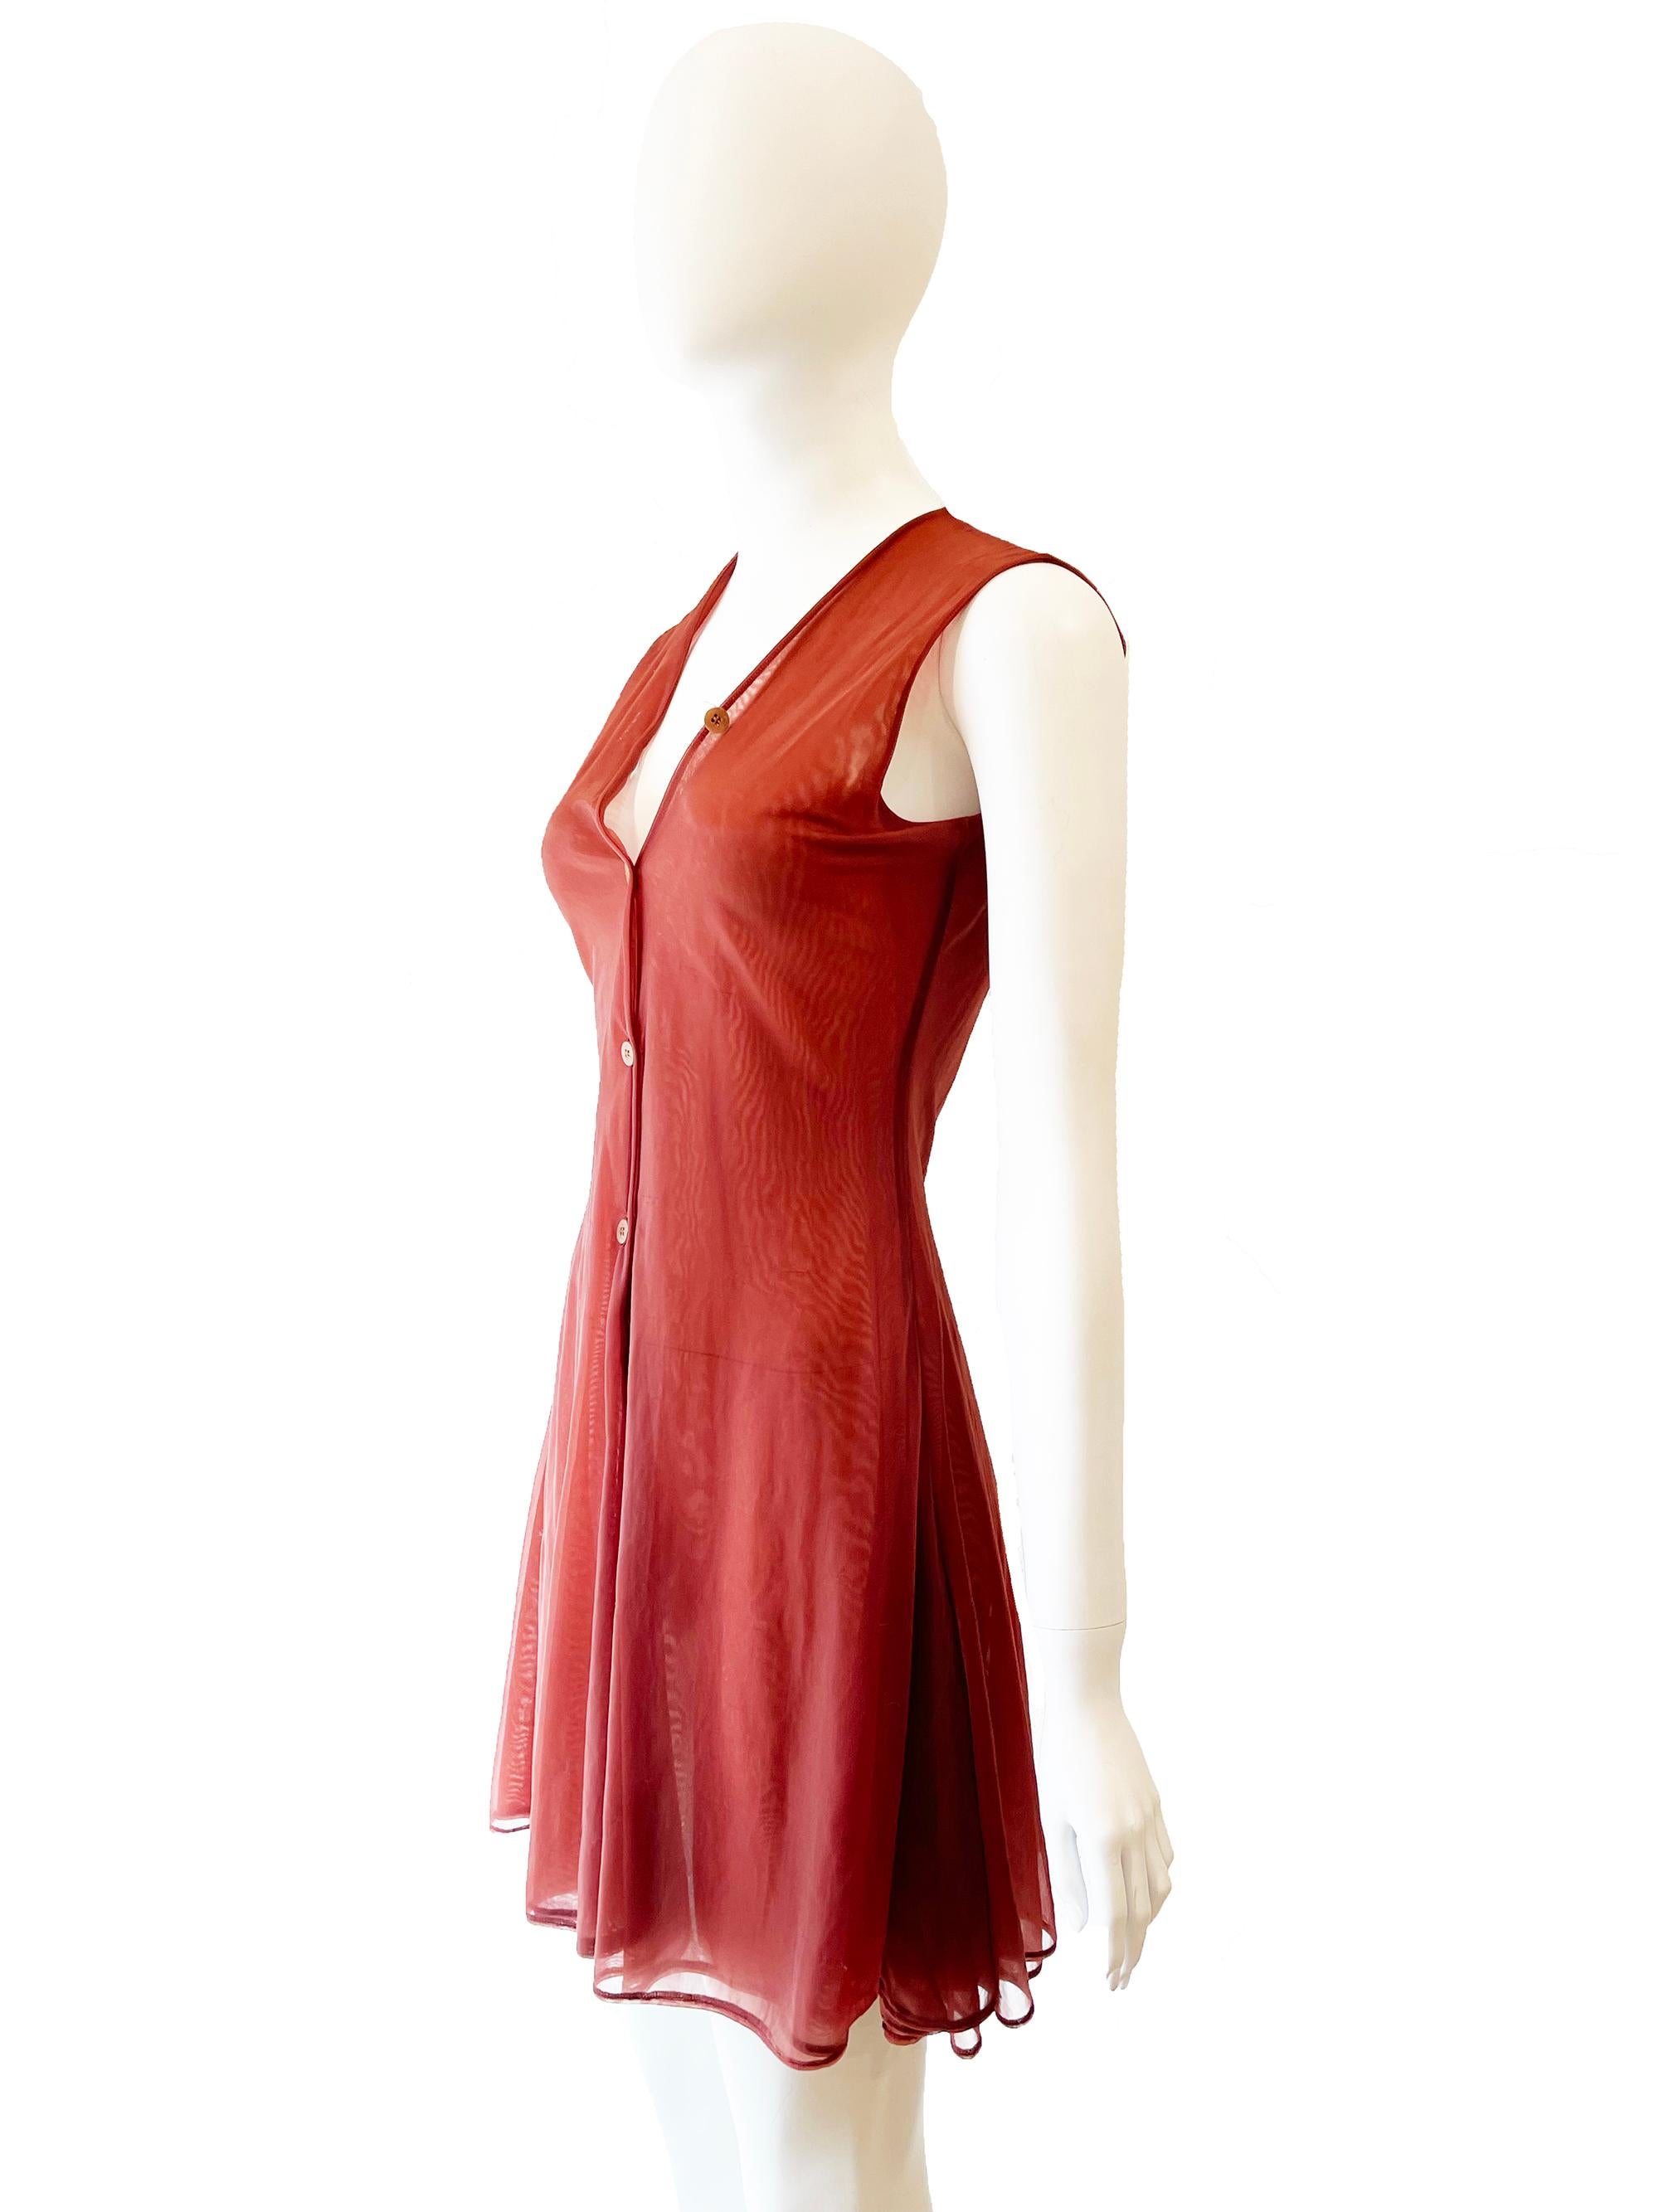 1991 Helmut Lang Sheer Asymmetrical Dress and Slip

